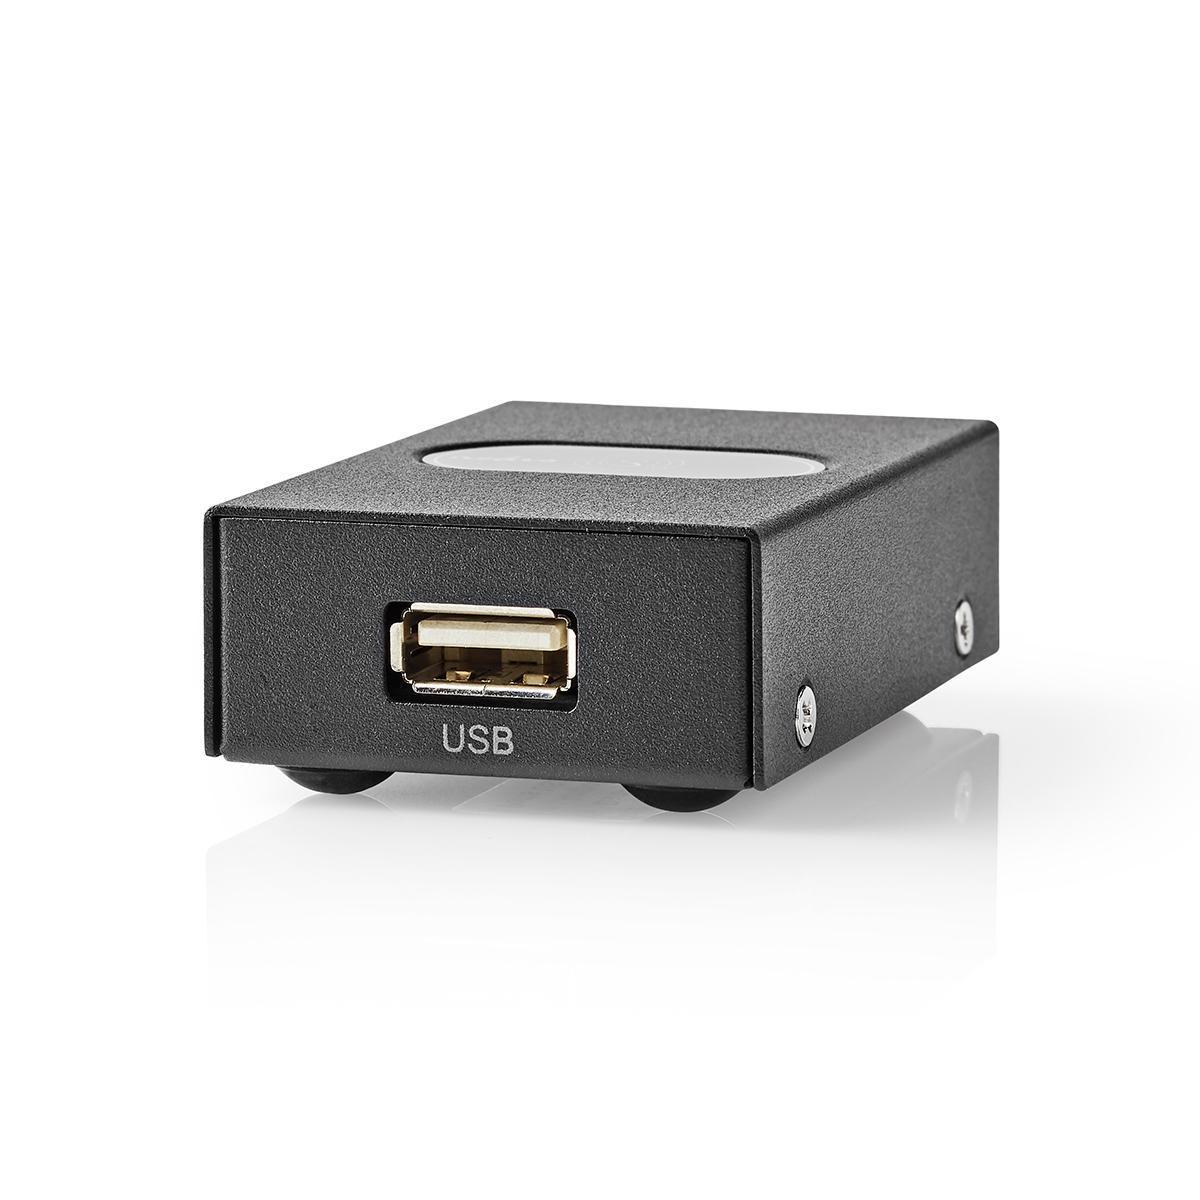 NEDIS CSWI6002BK, USB-Switch